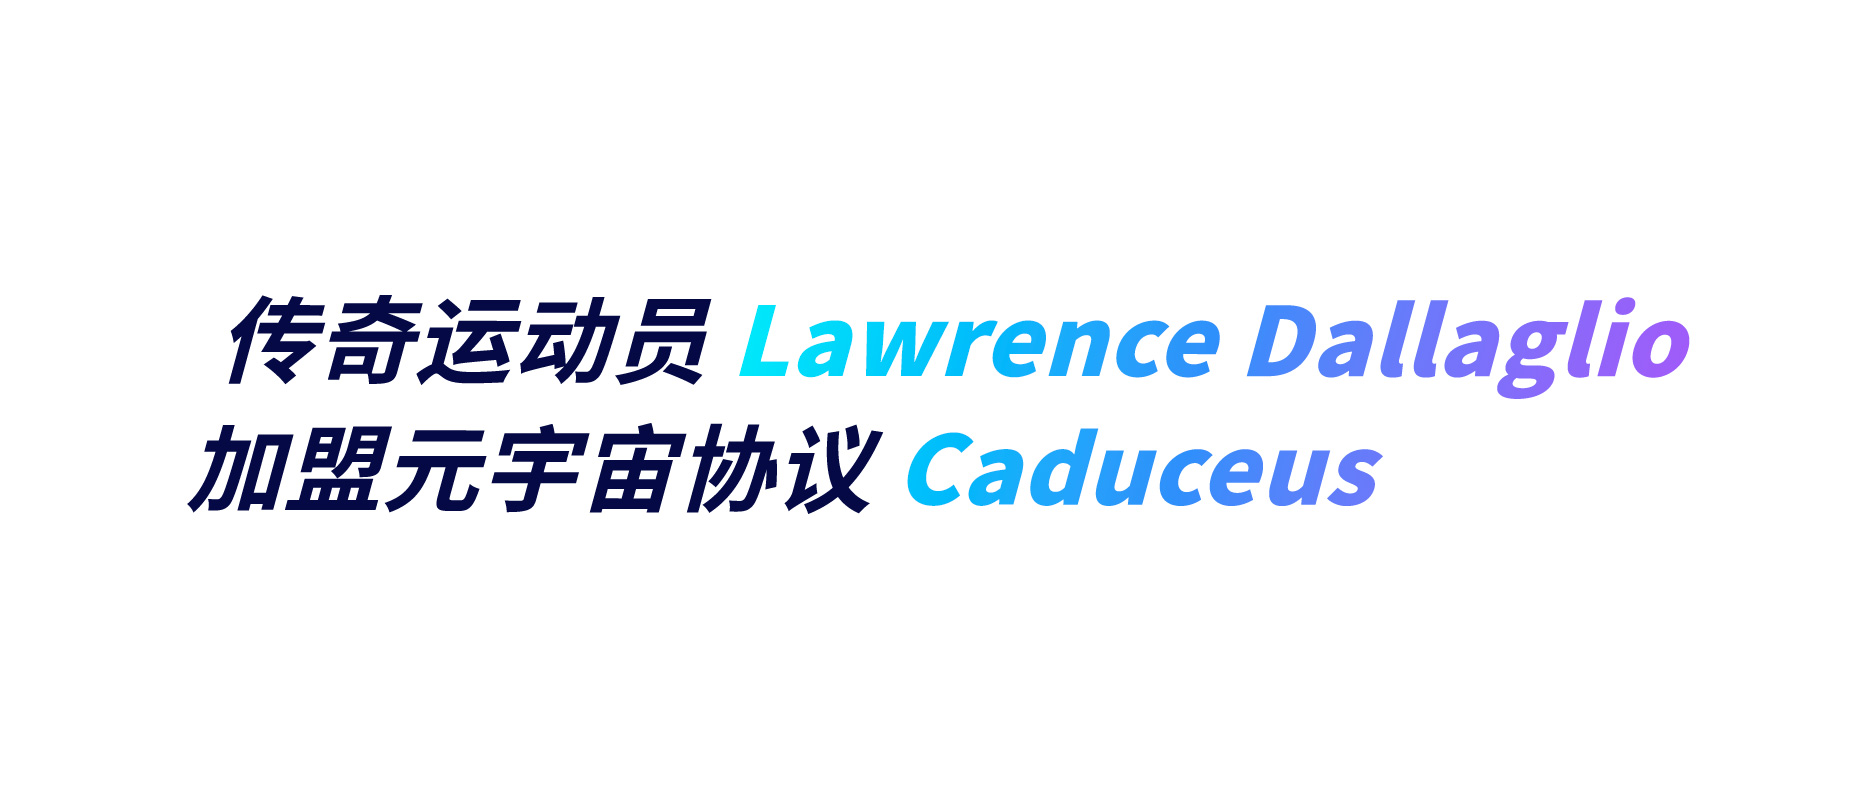 传奇运动员 Lawrence Dallaglio加盟元宇宙协议 Caduceus